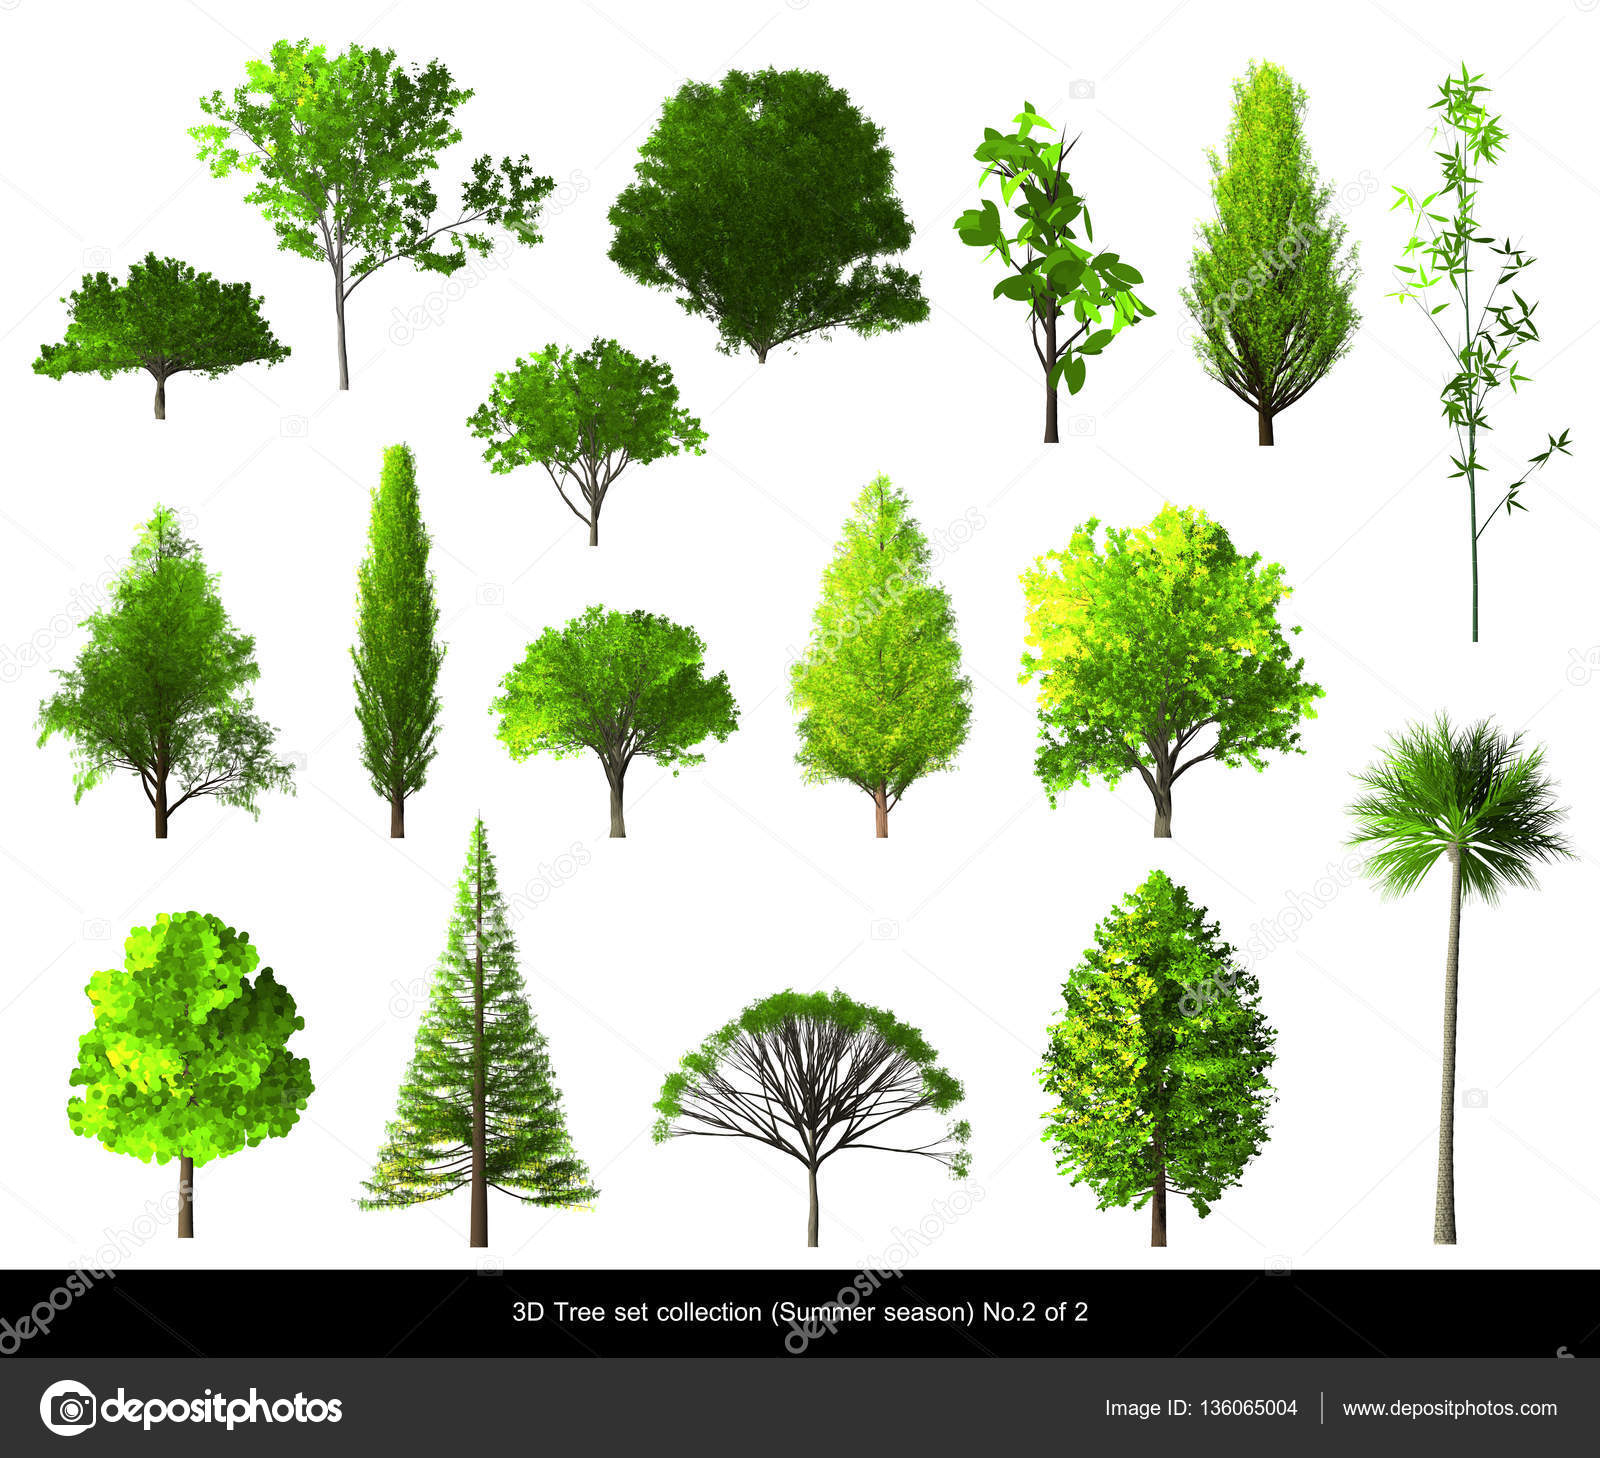 Green leaf Tree summer season set for architecture landscape design ...